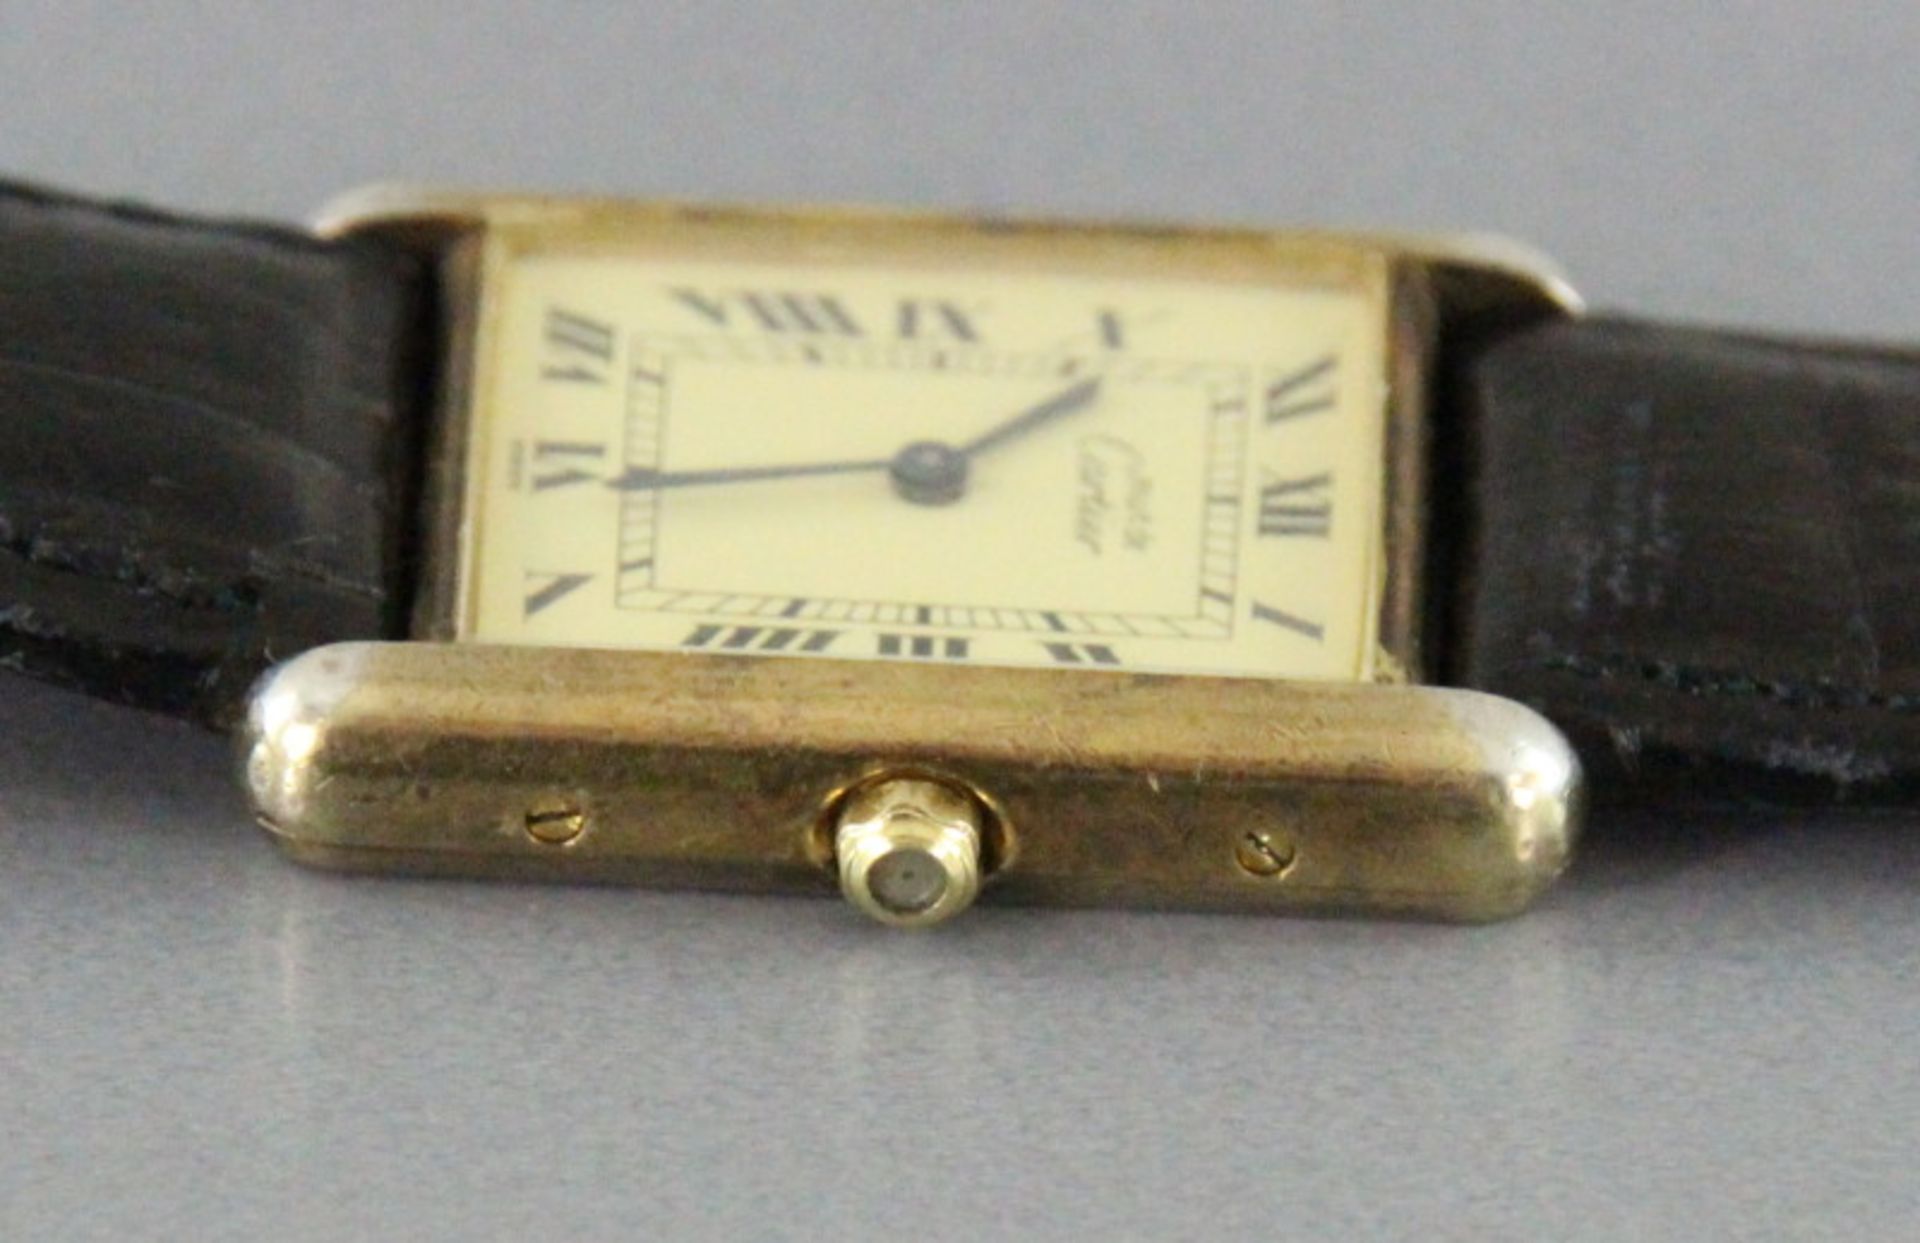 Damenarmbanduhr aus 925er Silber mit Restvergoldung der Fondation Cartier, Paris, "Tank Vermeil" - Bild 3 aus 4